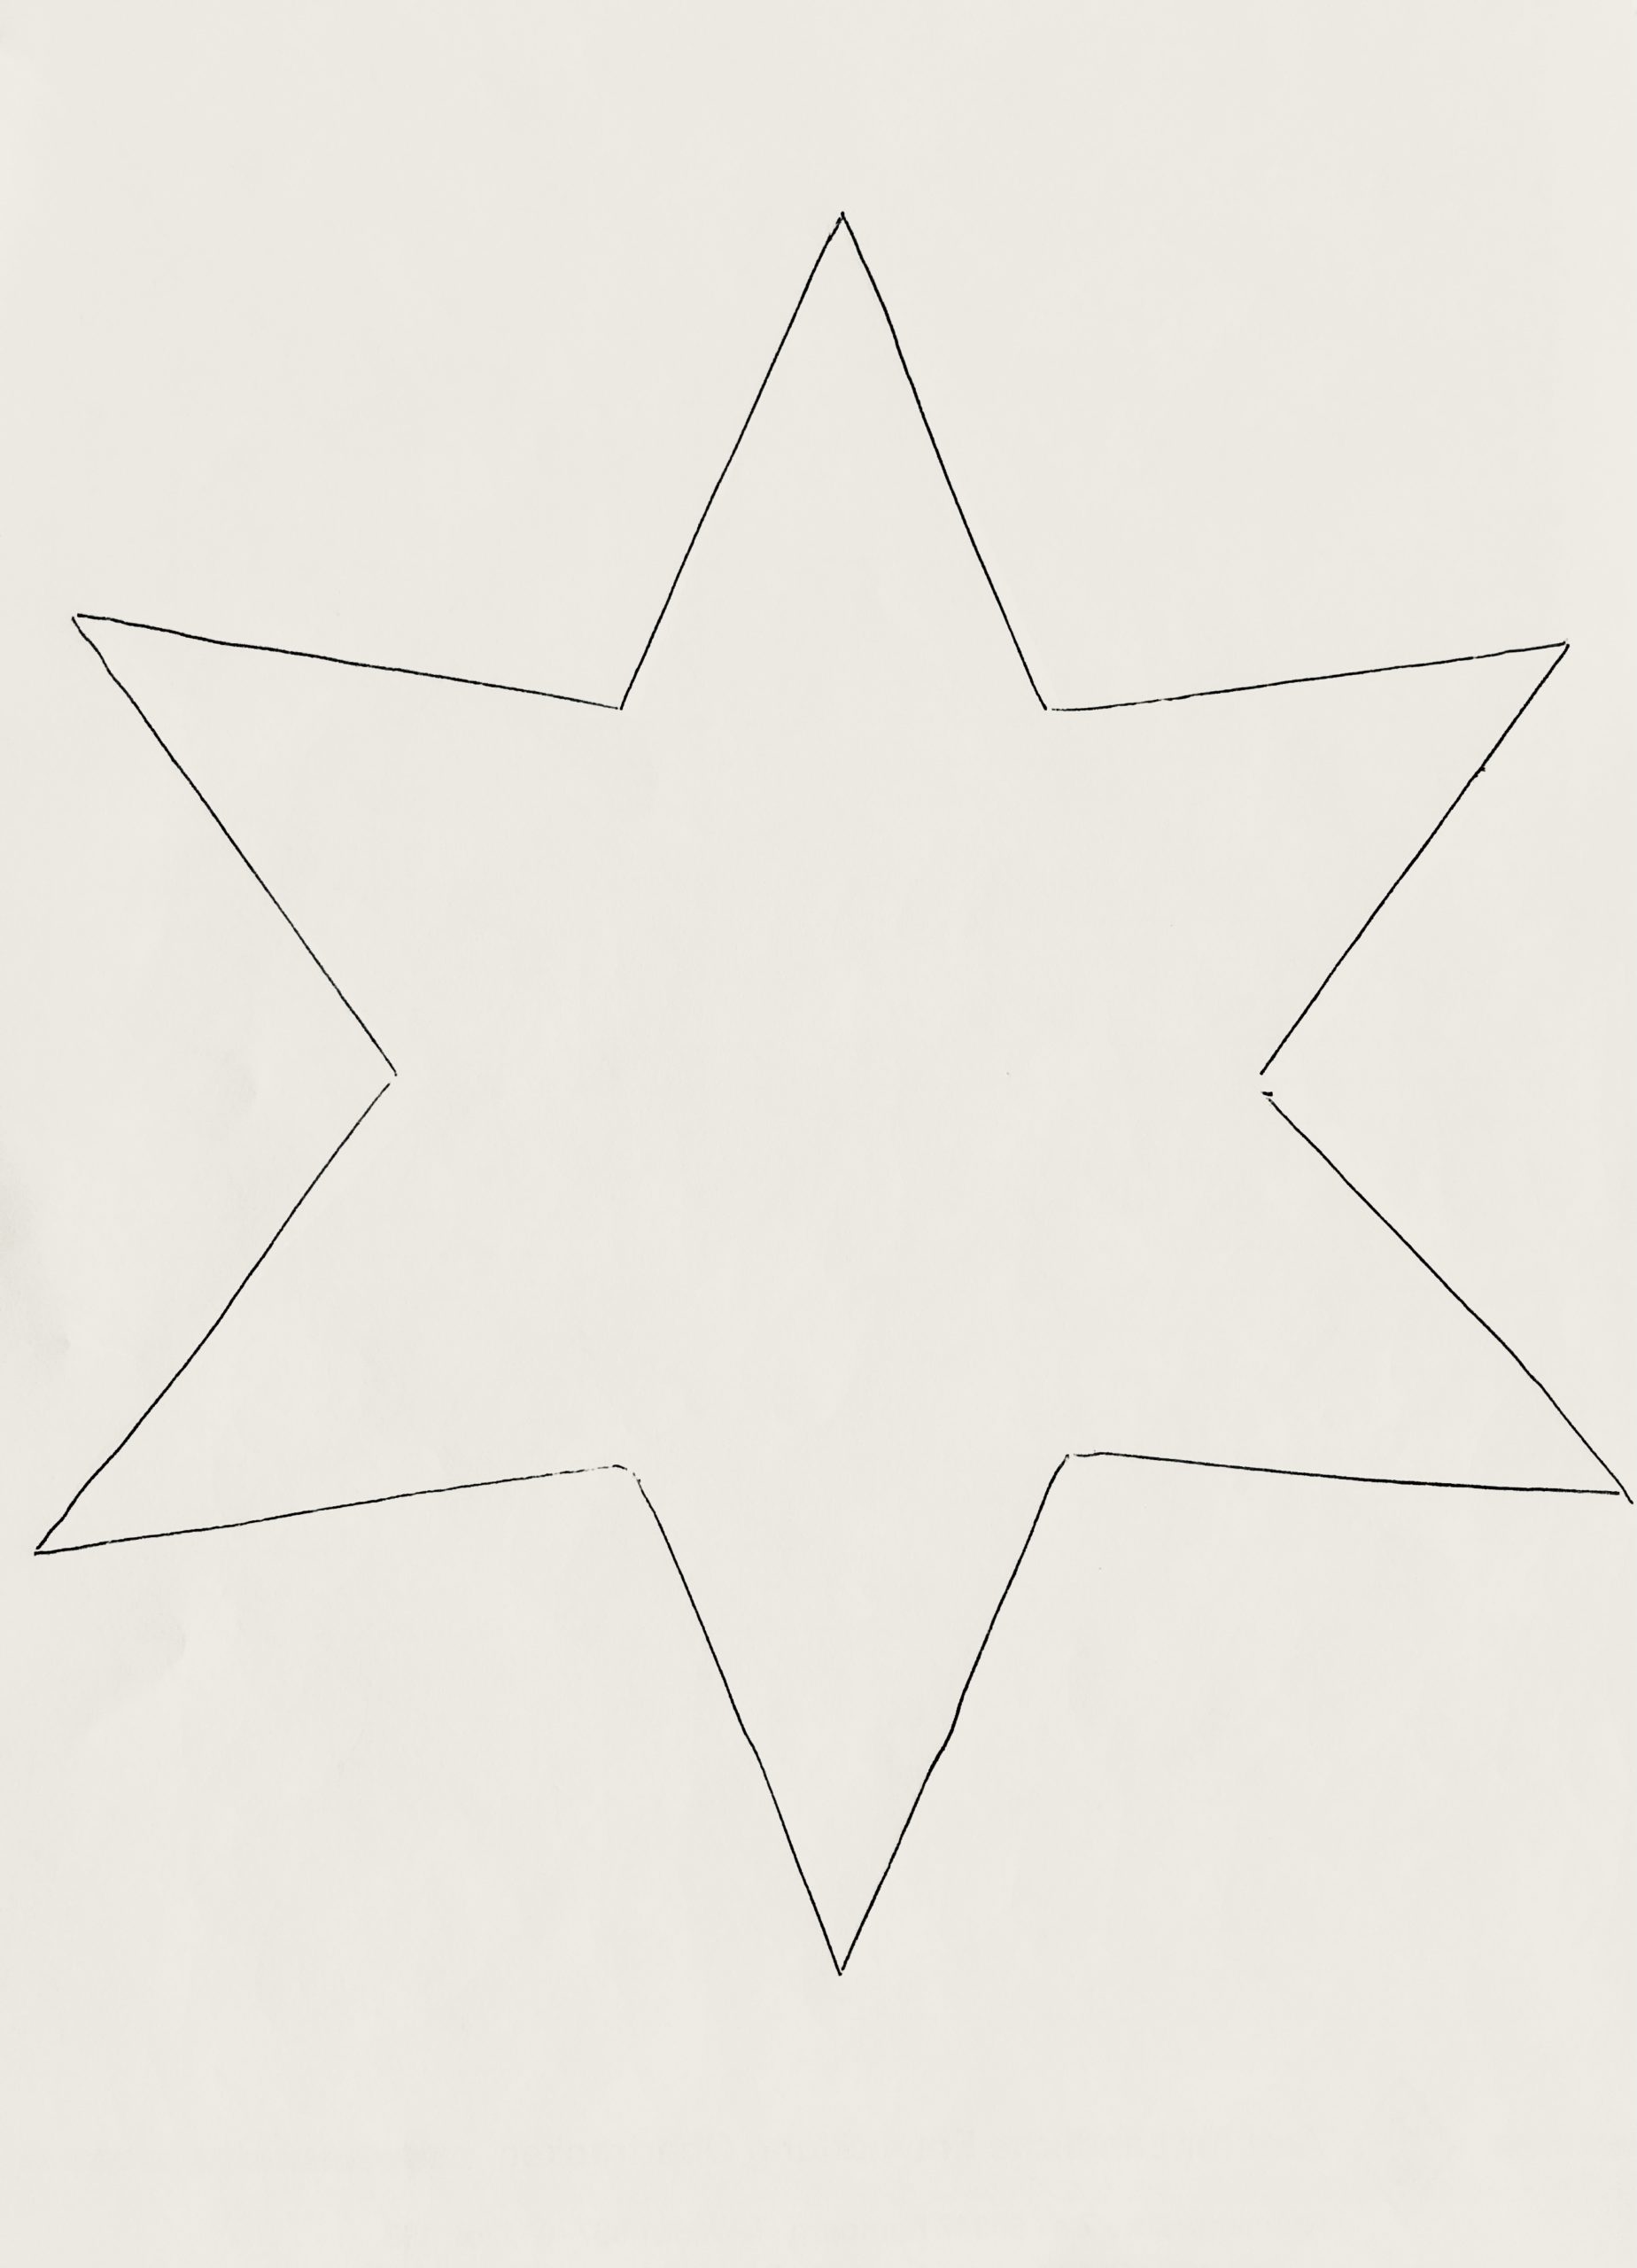 Bild zum Schritt 1 für das Bastel- und DIY-Abenteuer für Kinder: 'Für jeden fertigen Stern brauchst du zwei ausgeschnittene Sterne. Dafür...'